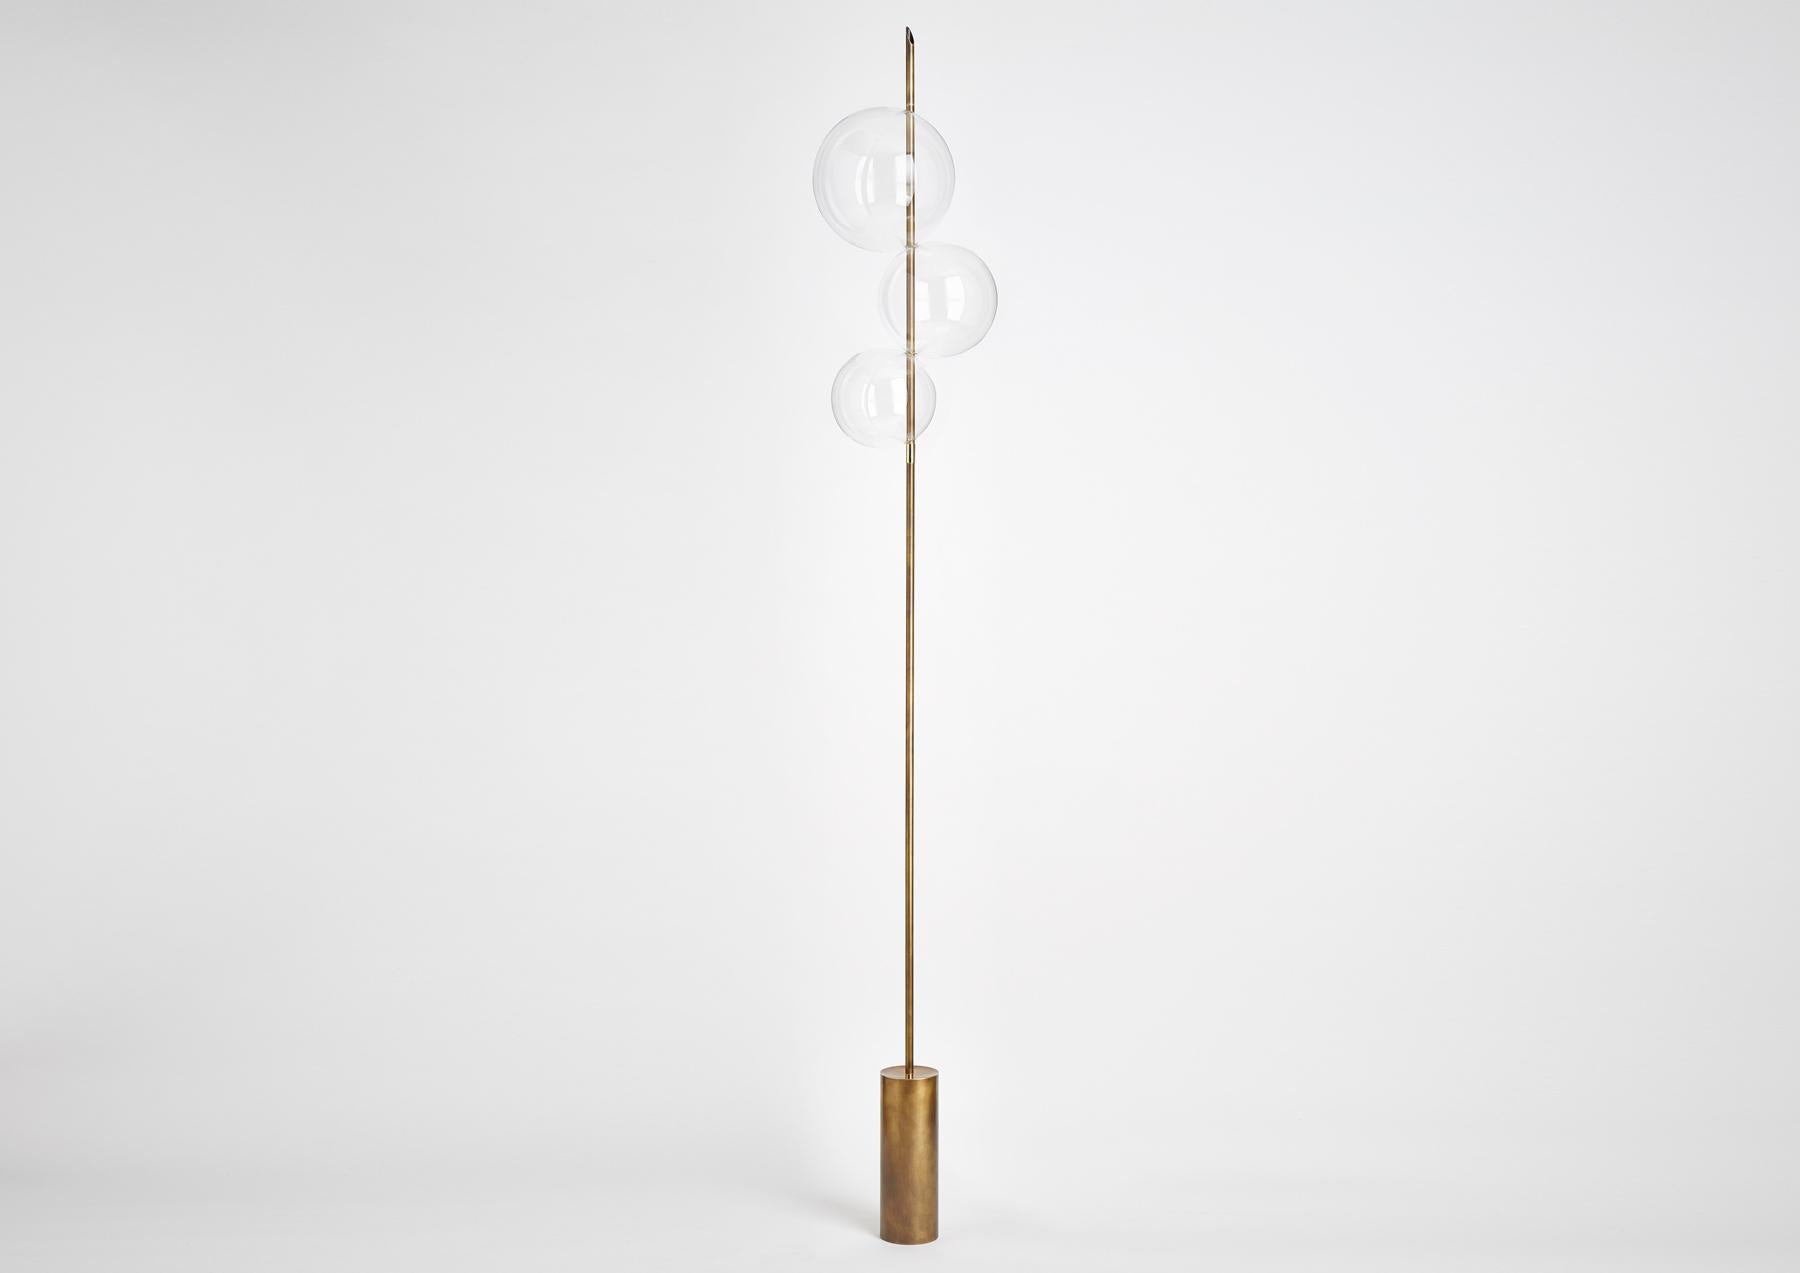 Grandine Three Lights s ist eine minimalistische, zeitgenössische Stehleuchte, die von Hagelkörnern inspiriert ist. Sie besteht aus drei sich berührenden, mundgeblasenen Glaskugeln, die so angeordnet sind, dass sie den Eindruck von Eiskugeln